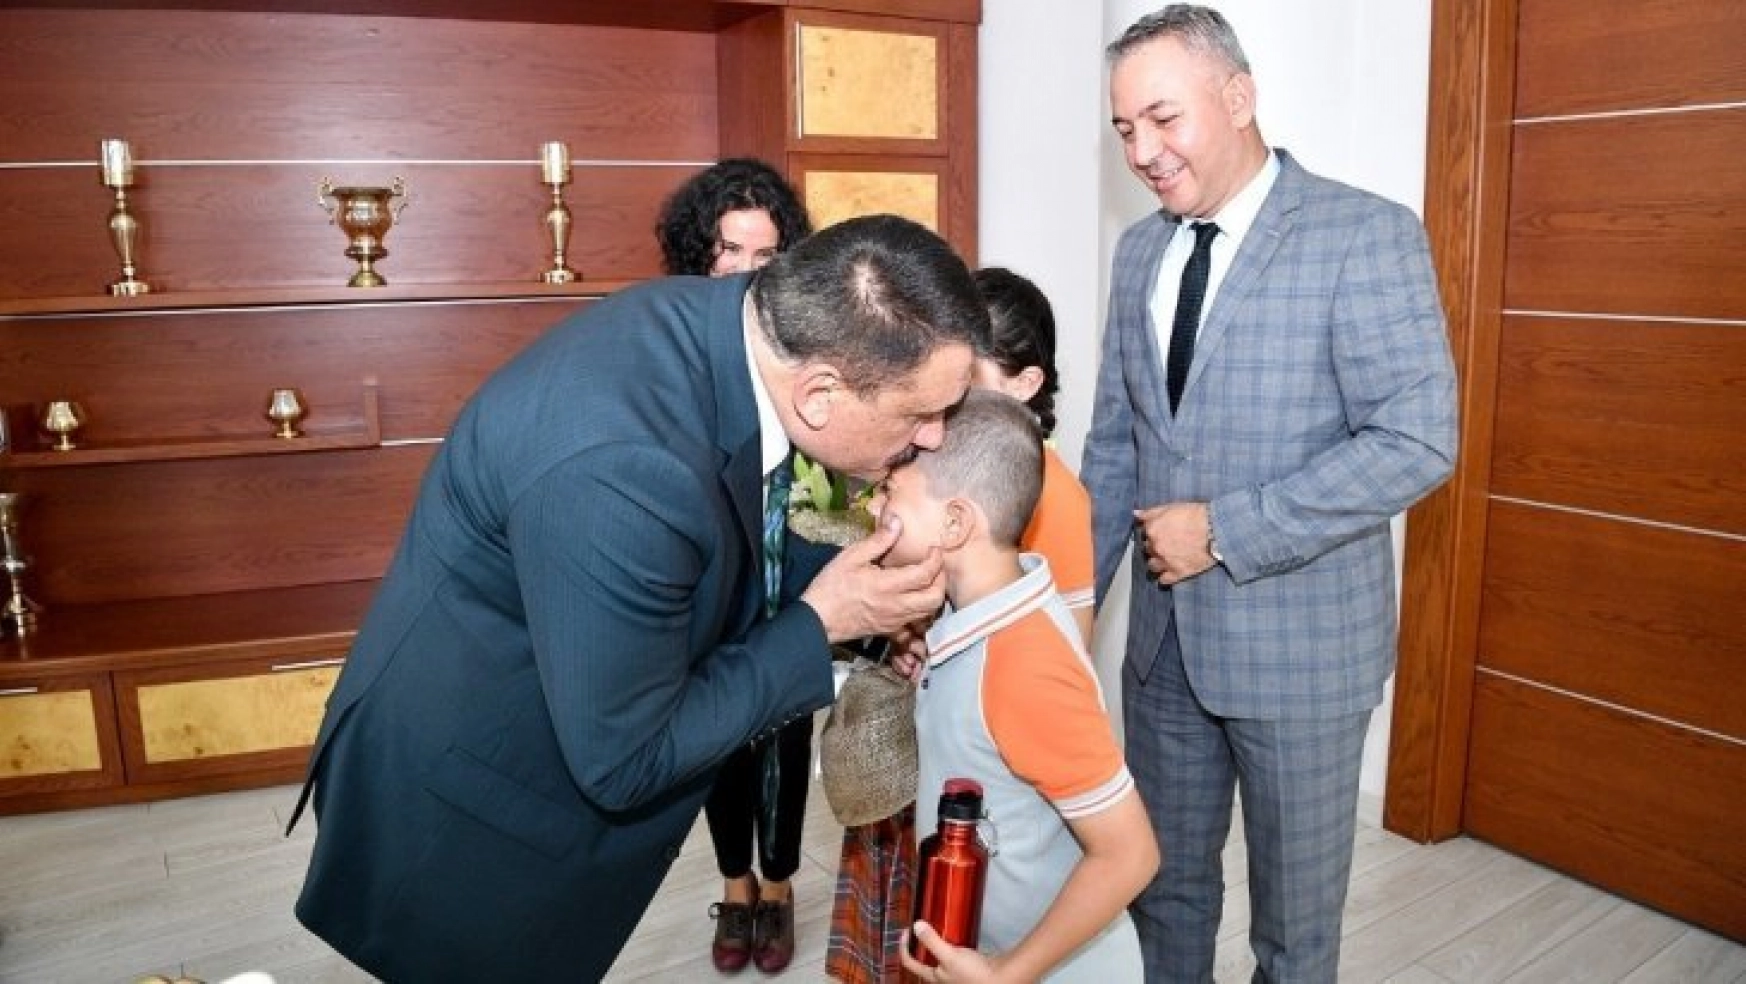 Başkan Gürkan, ziyarete gelen öğrencileri makamında karşıladı